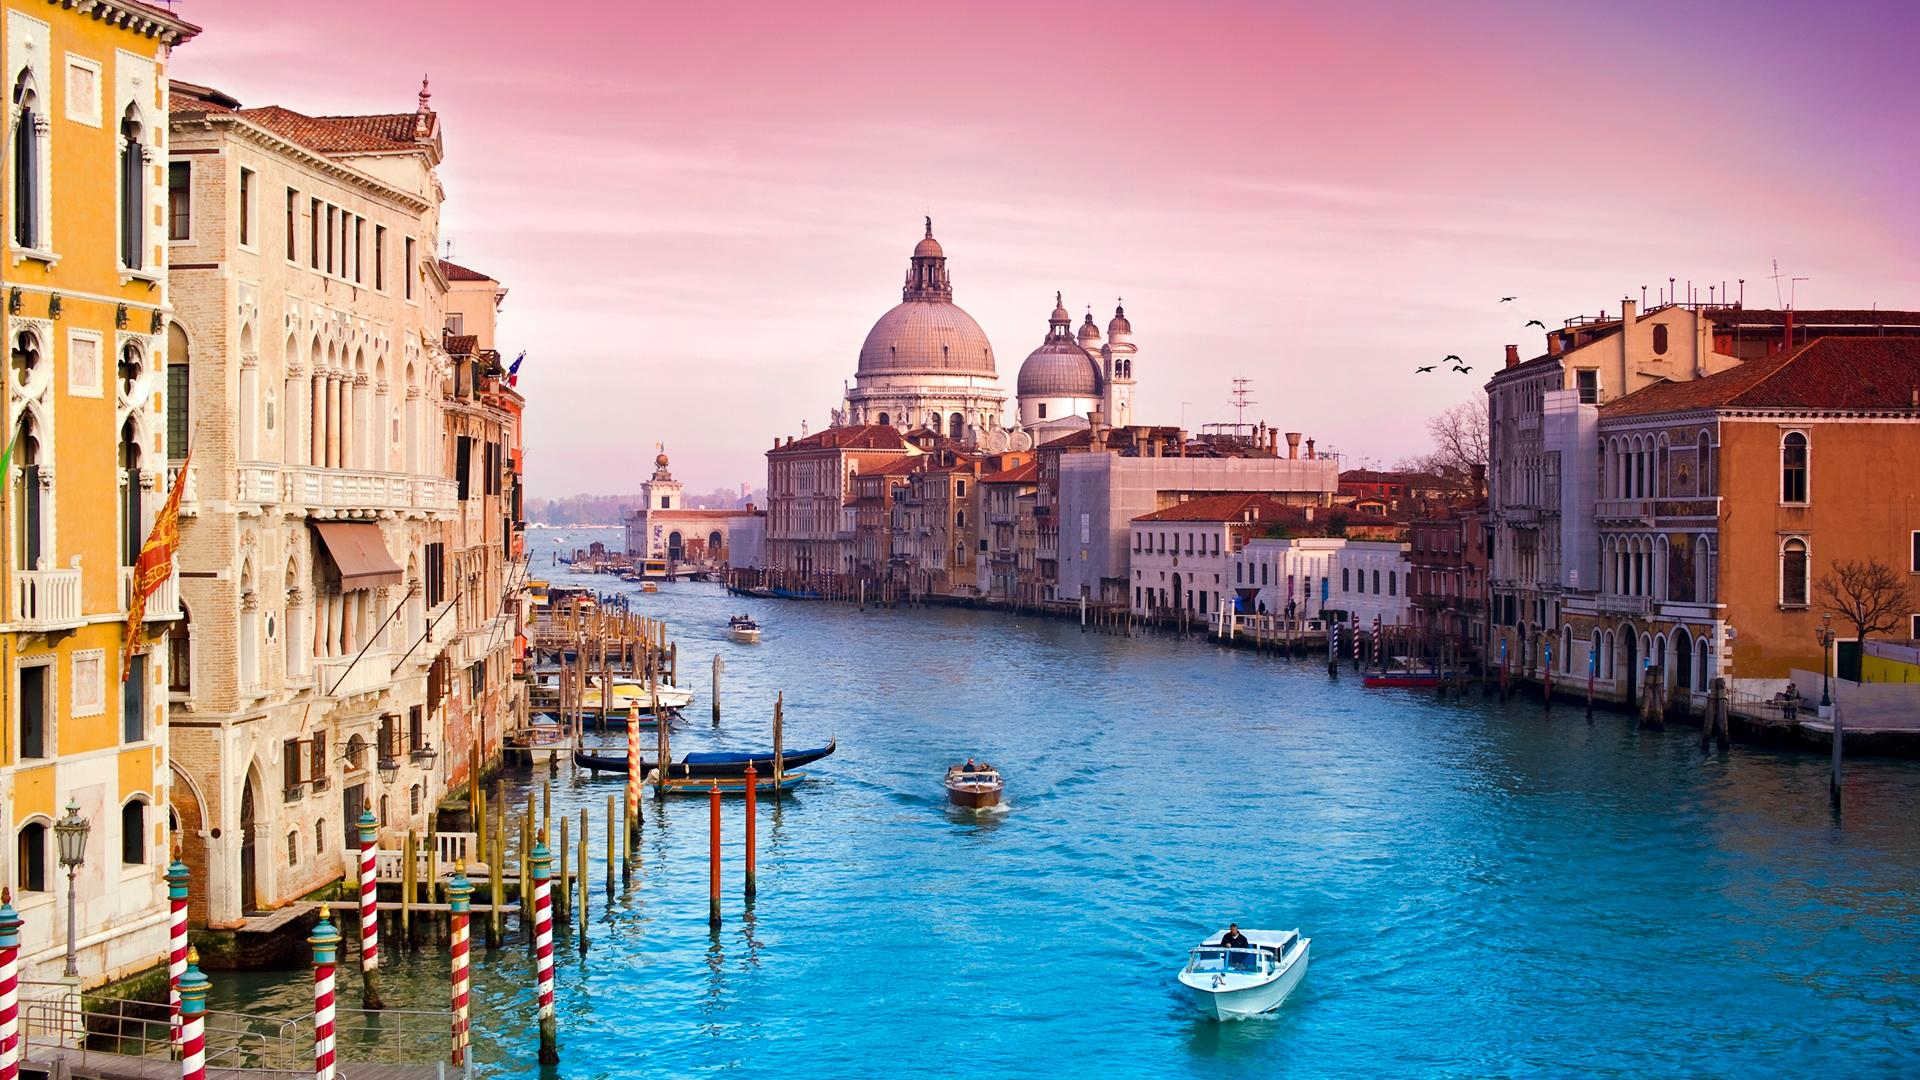 Turisti okupitali Veneciju: Čekali osam sati da uđu u Duždevu palaču